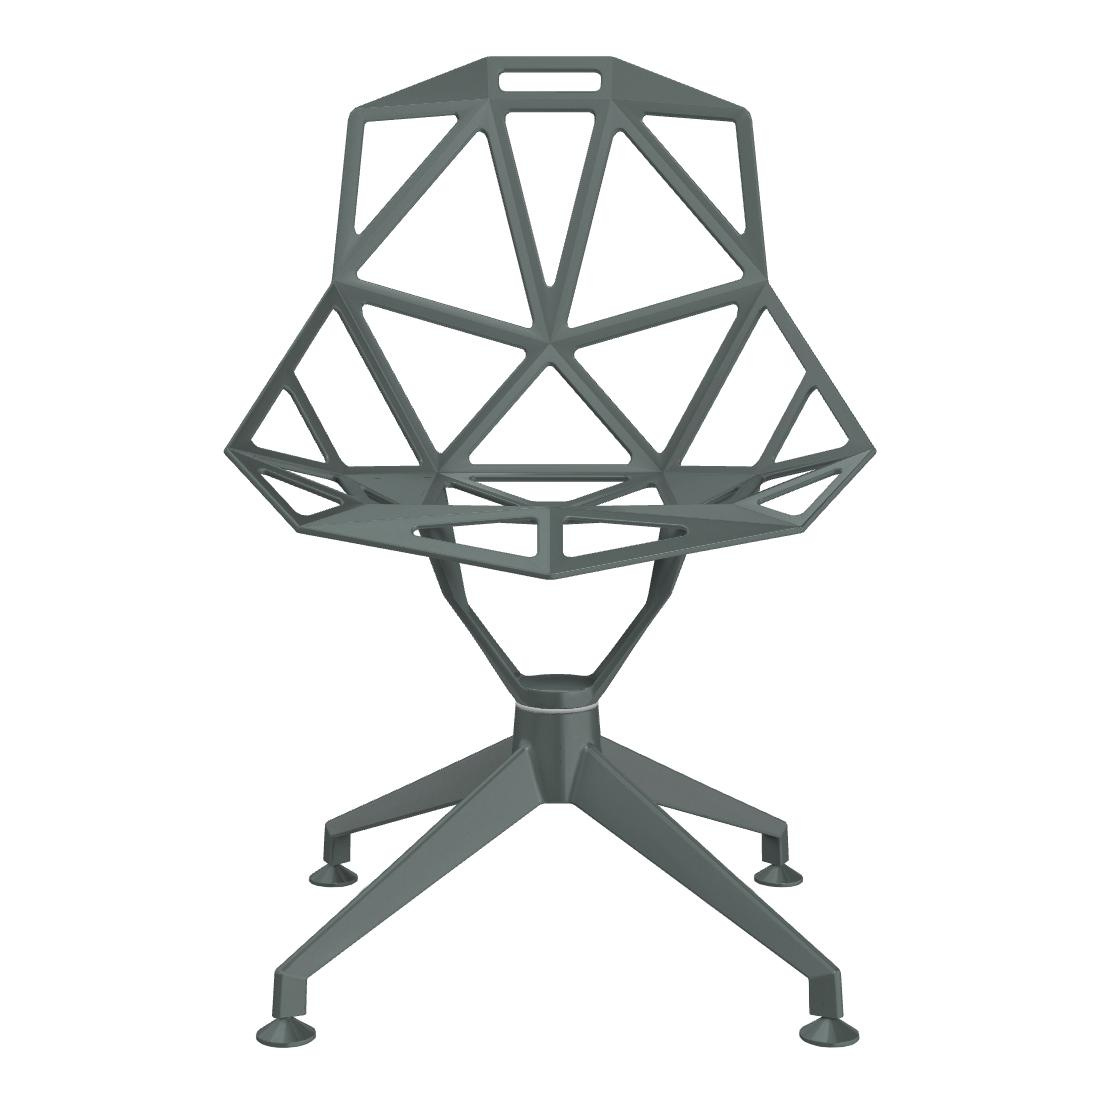 Magis - Chair One 4Star Drehstuhl Vierfußgestell - grau-grün/BxHxT 51x84x51cm/Titan und Polyester fluoriert lackiert/Gestell und Sitz aus Aluminium-Dr von Magis